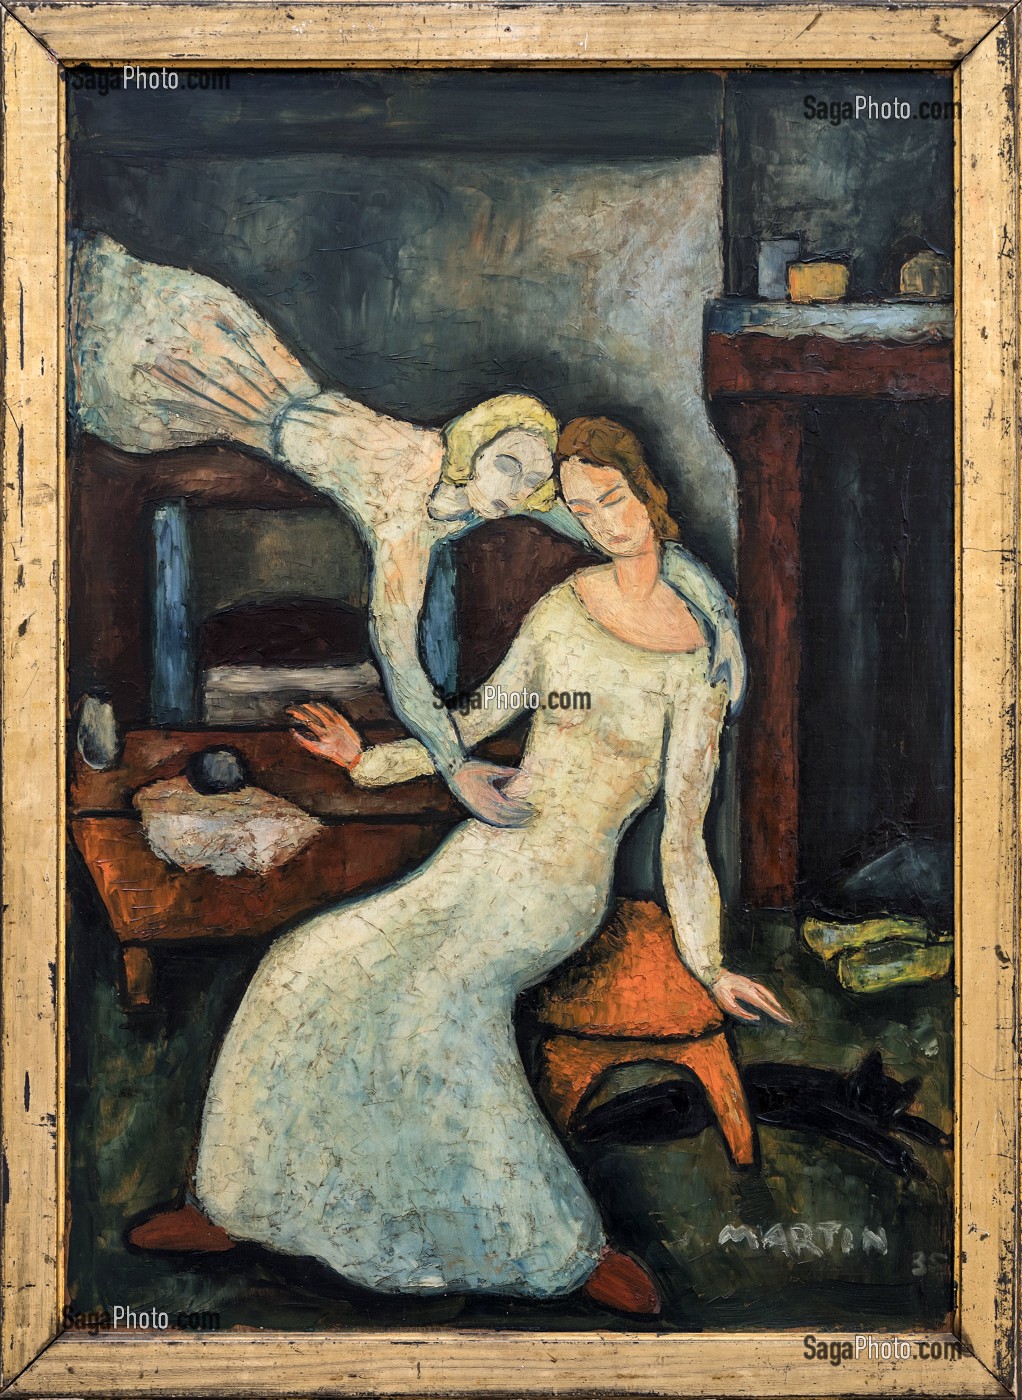 L'ANNONCIATION, JEAN MARTIN, 1935, HUILE SUR BOIS, MUSEE DU HIERON, MUSEE D'ART SACRE, PARAY-LE-MONIAL (71), FRANCE 